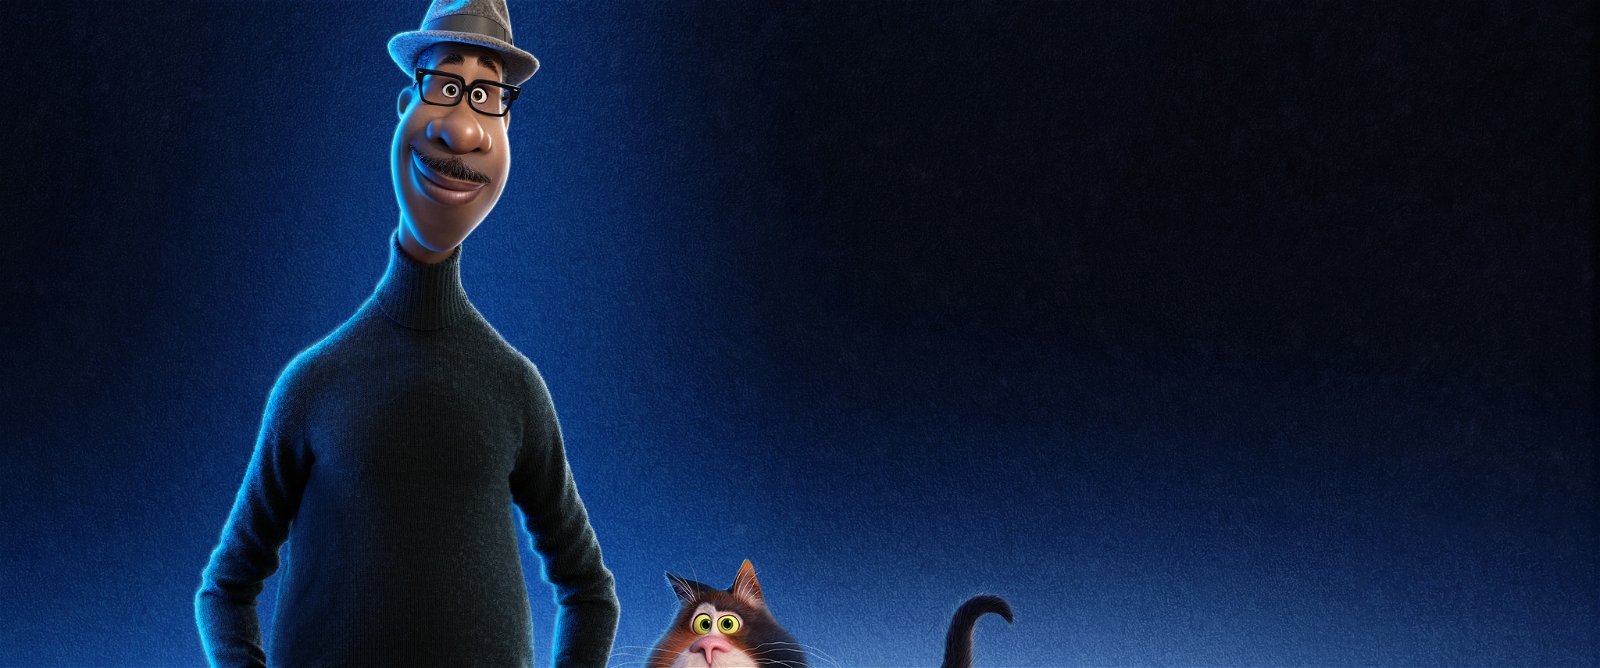 Ny trailer till Pixars efterlängtade film Soul